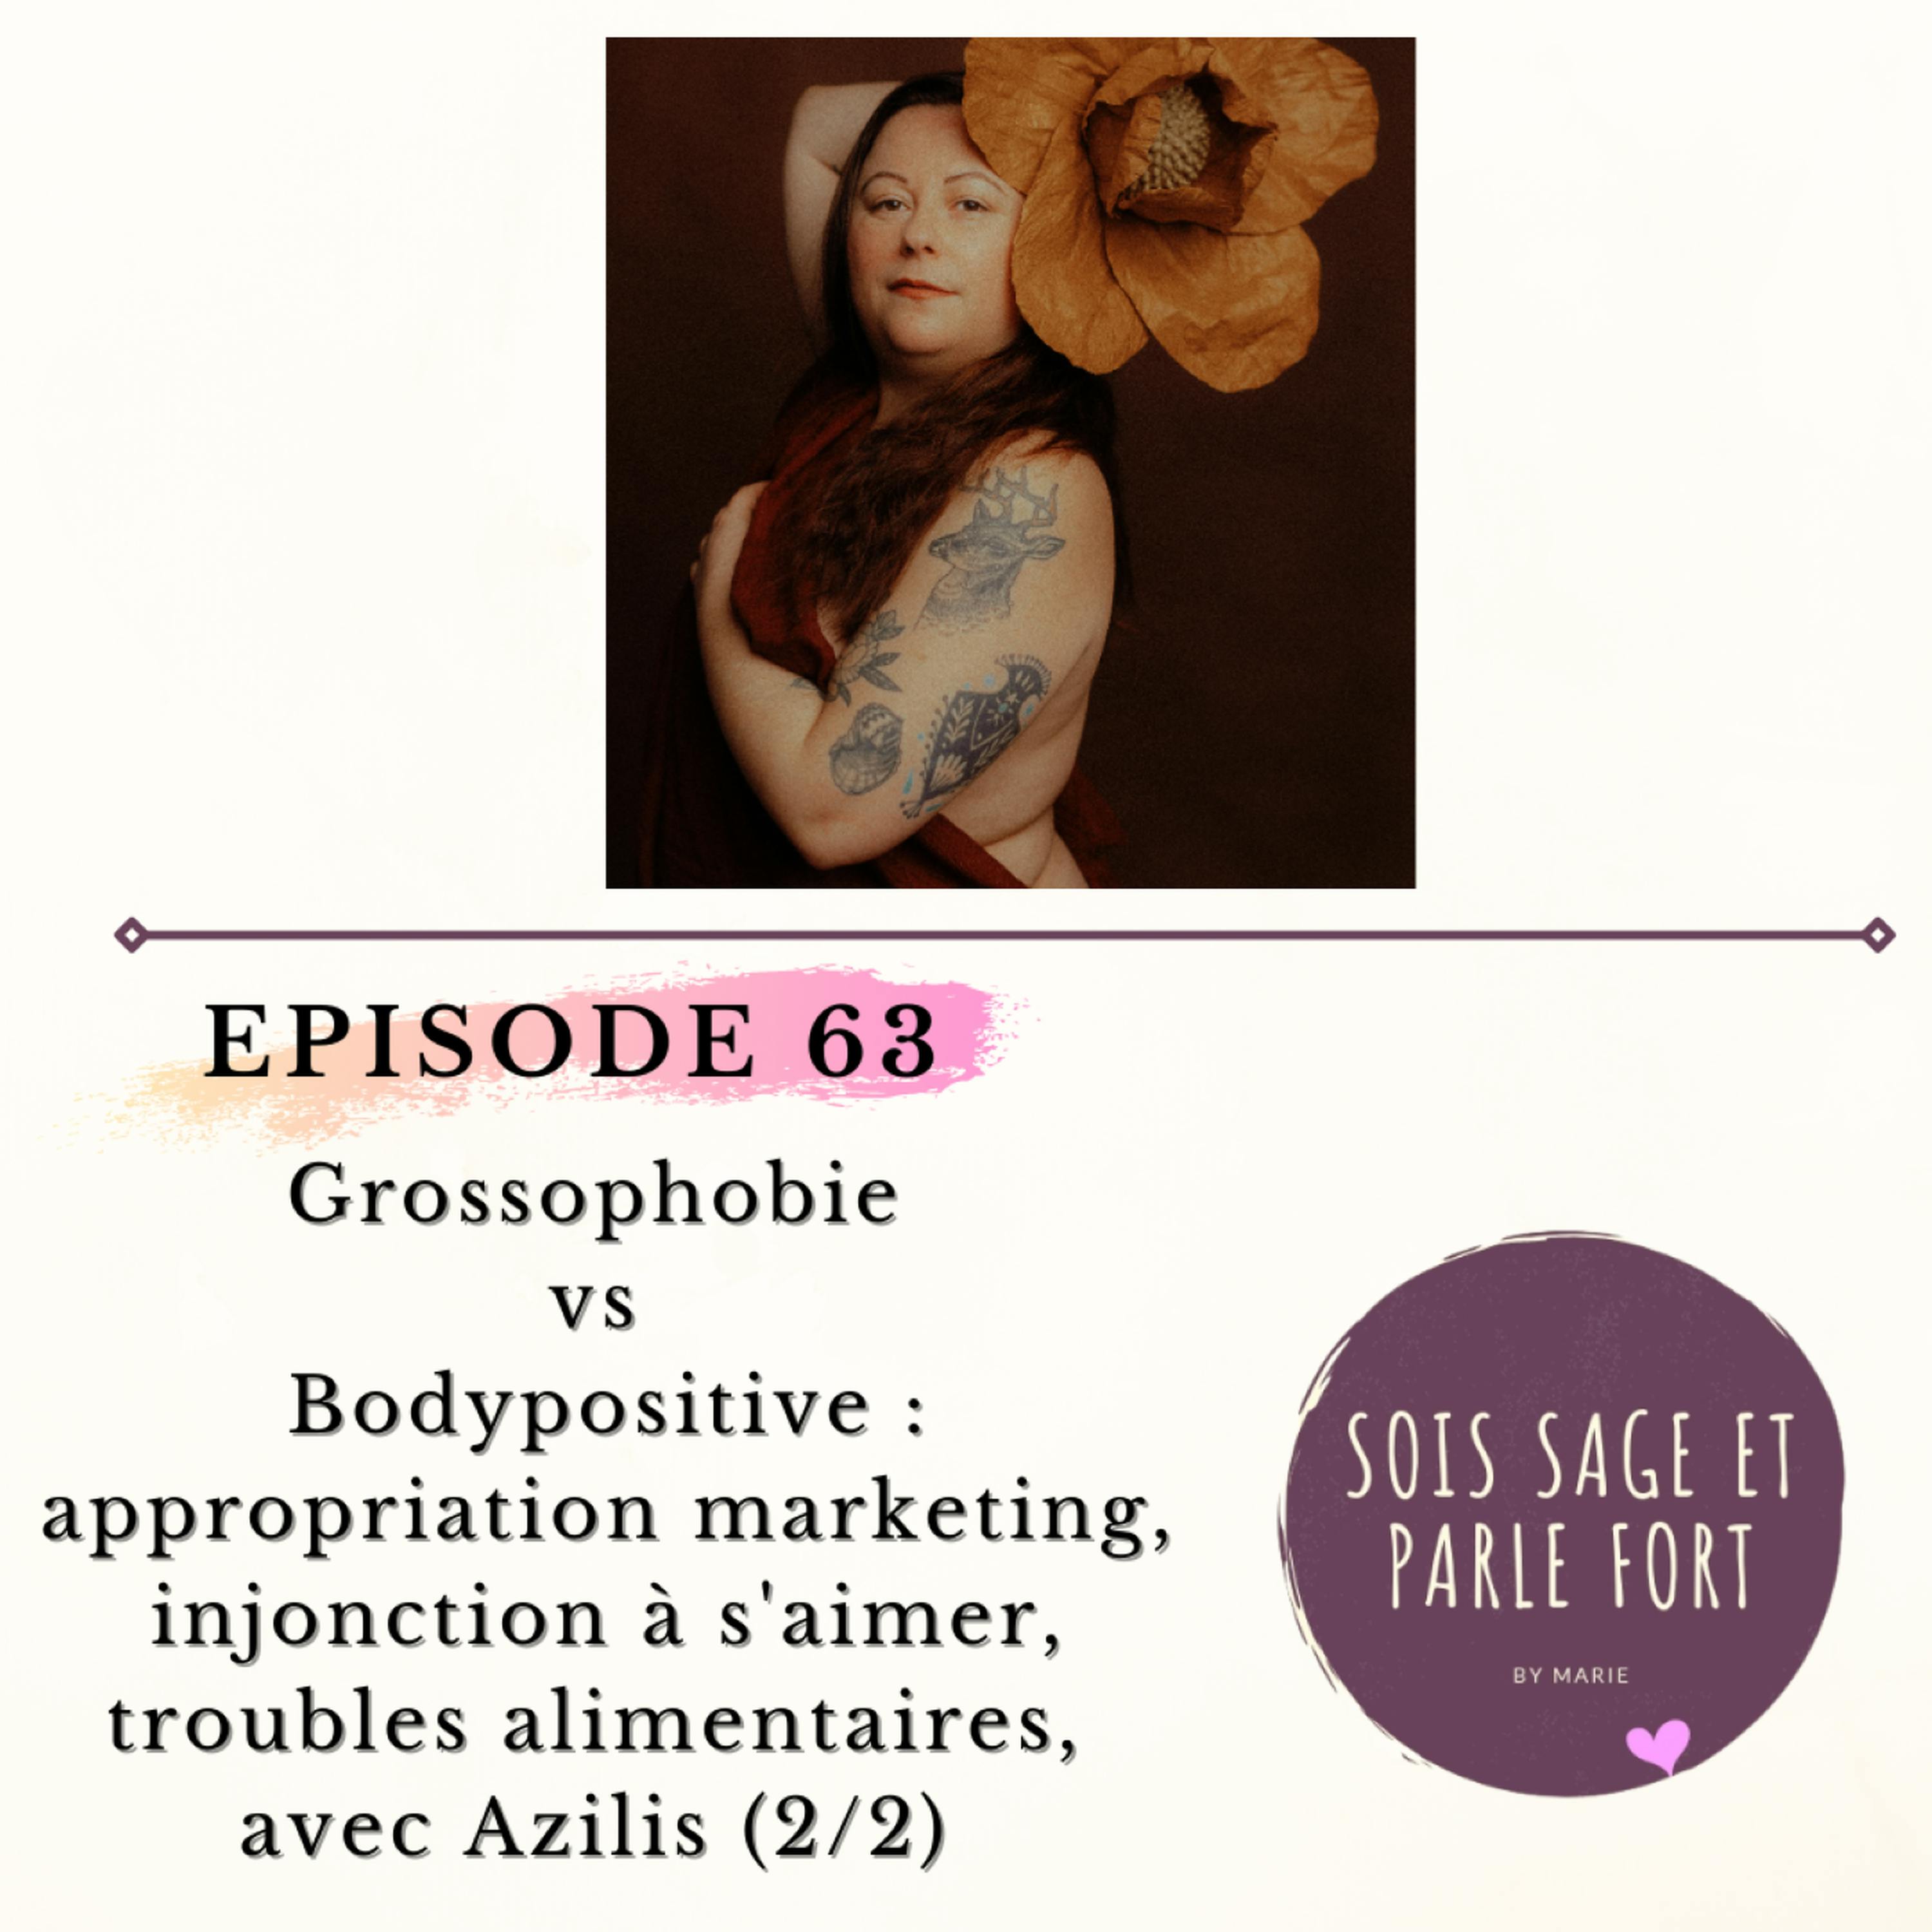 Grossophobie vs bodypositive : appropriation marketing, injonction à s'aimer et troubles alimentaires, avec Azilis (2/2)